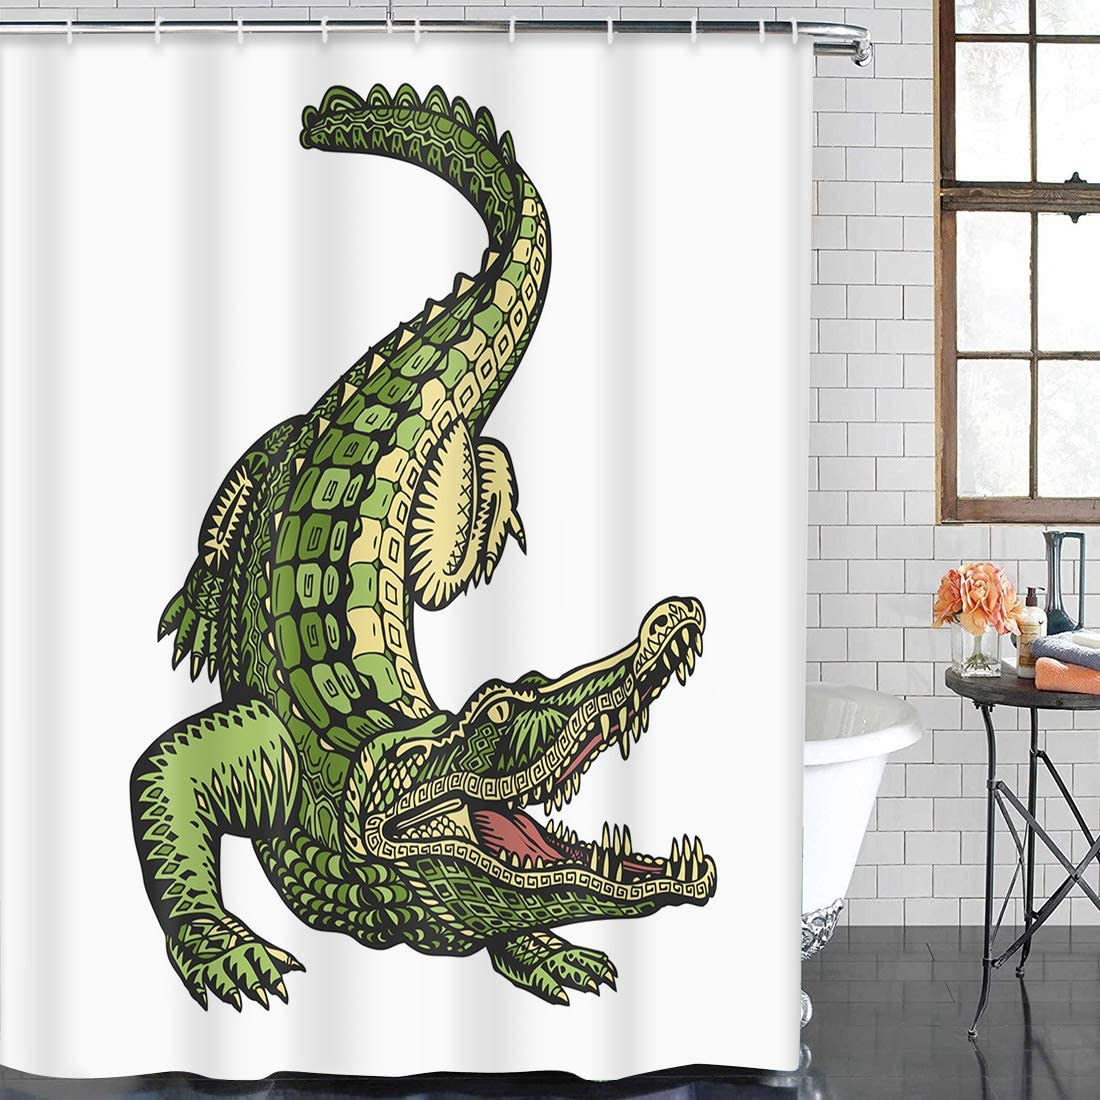 Green Gator Alligator Crocodile Shower Curtain